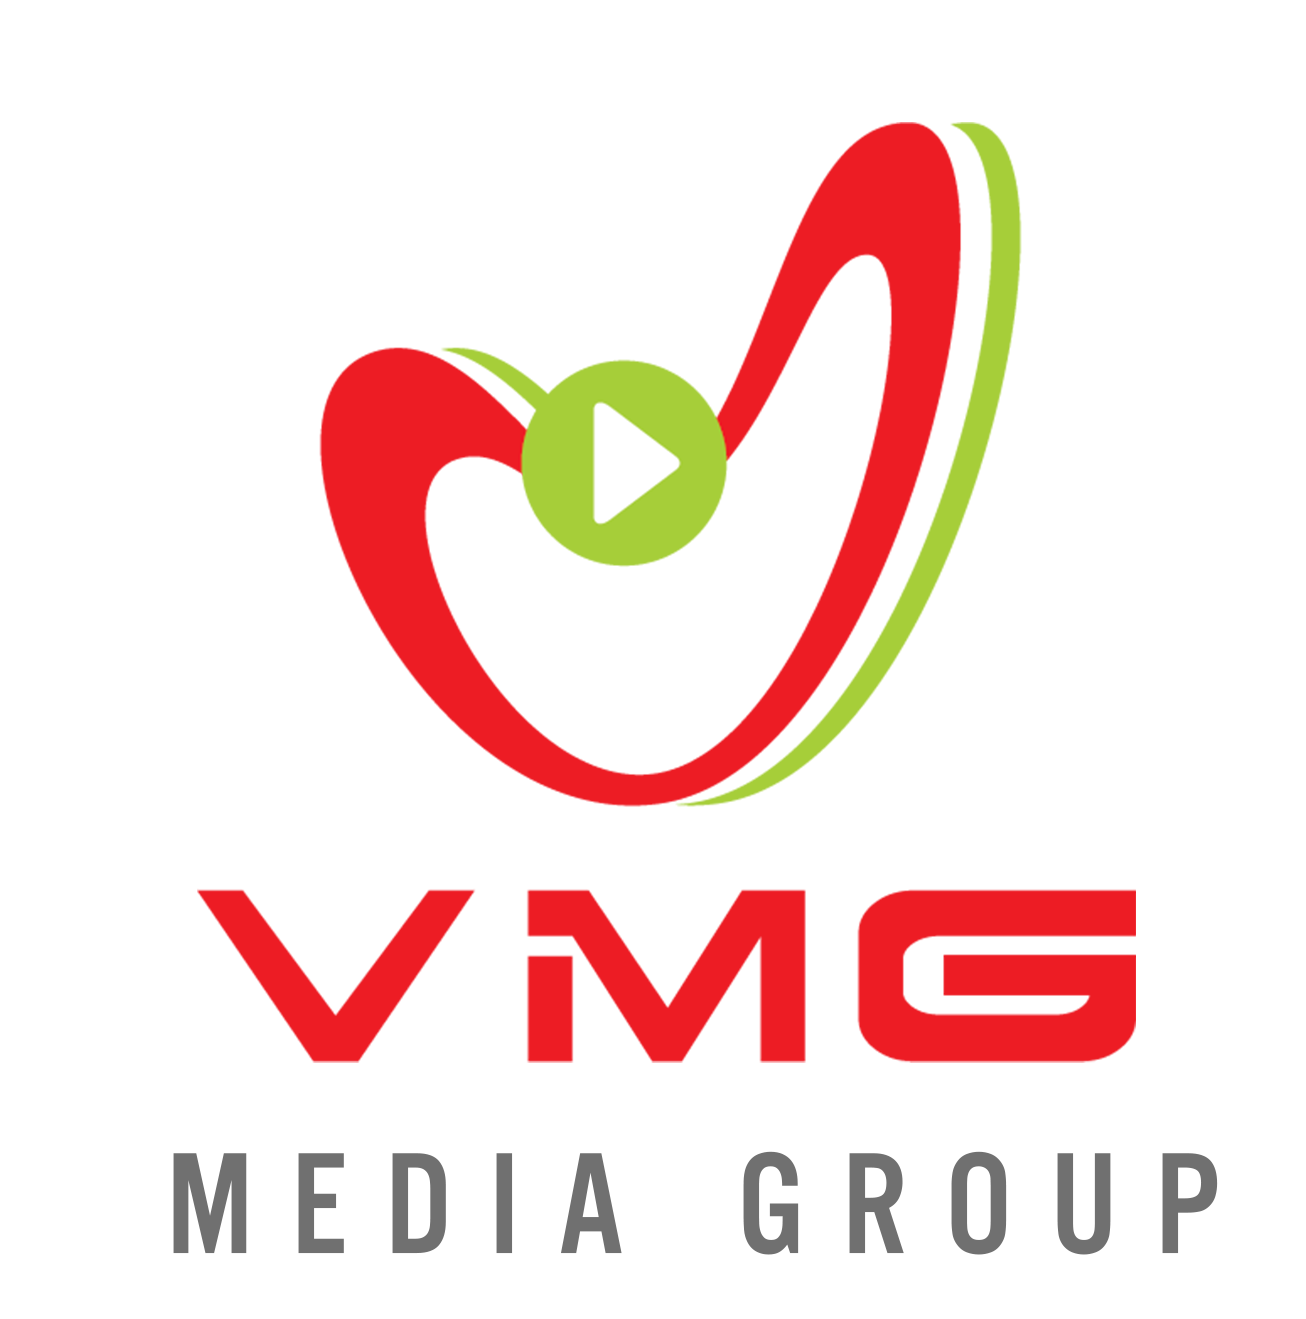 Công Ty Cổ Phần Truyền Thông VMG